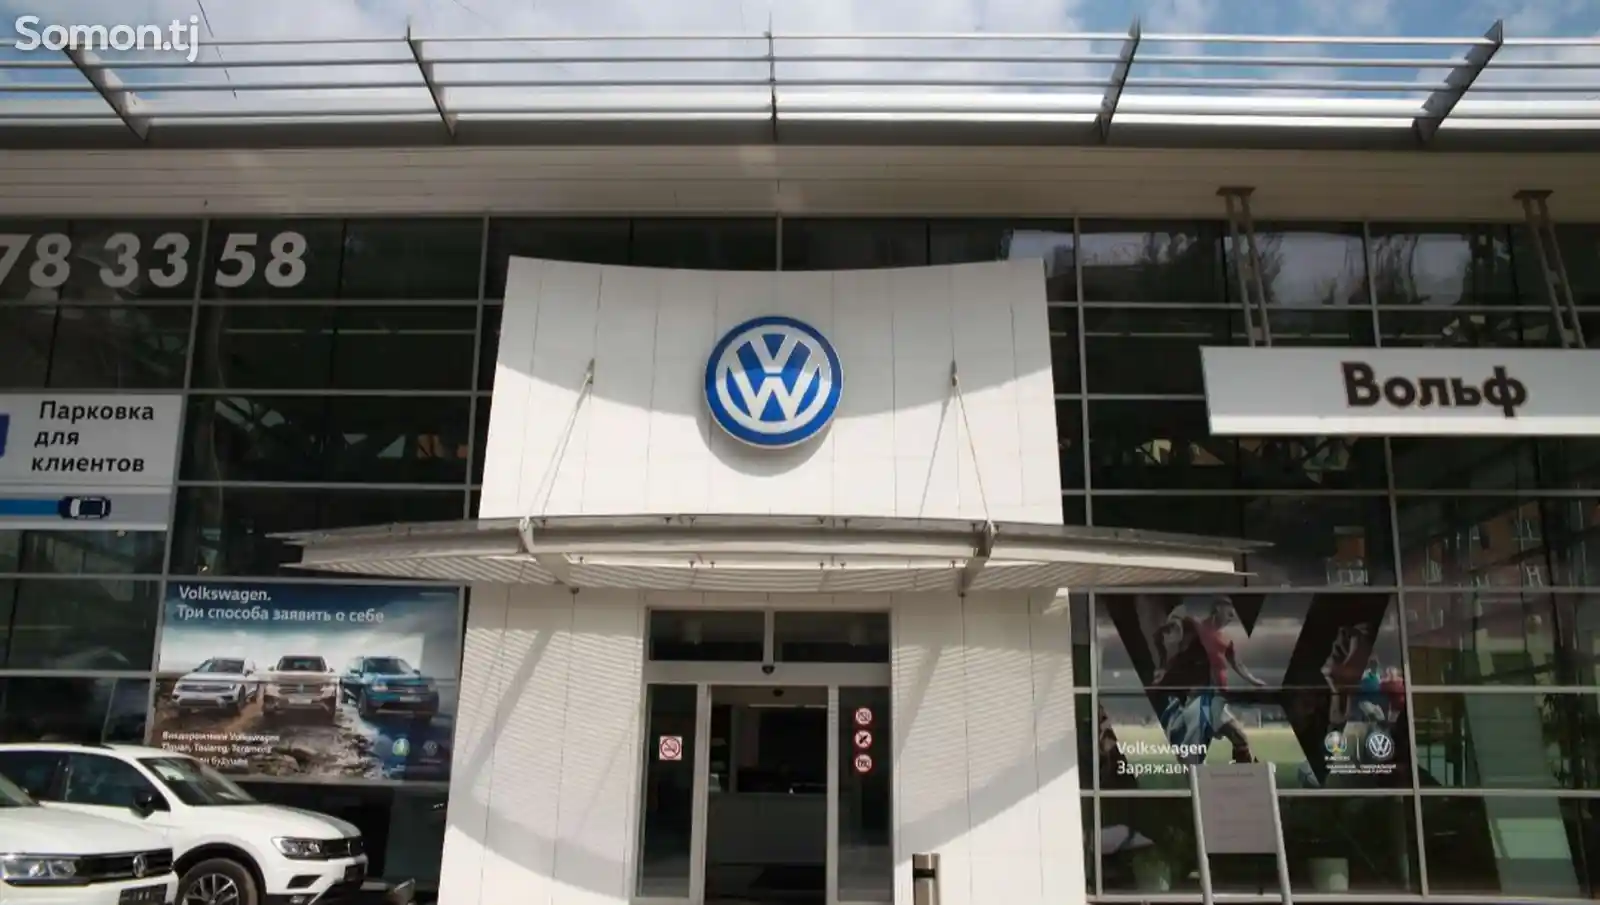 Volkswagen Tiguan, 2015-2